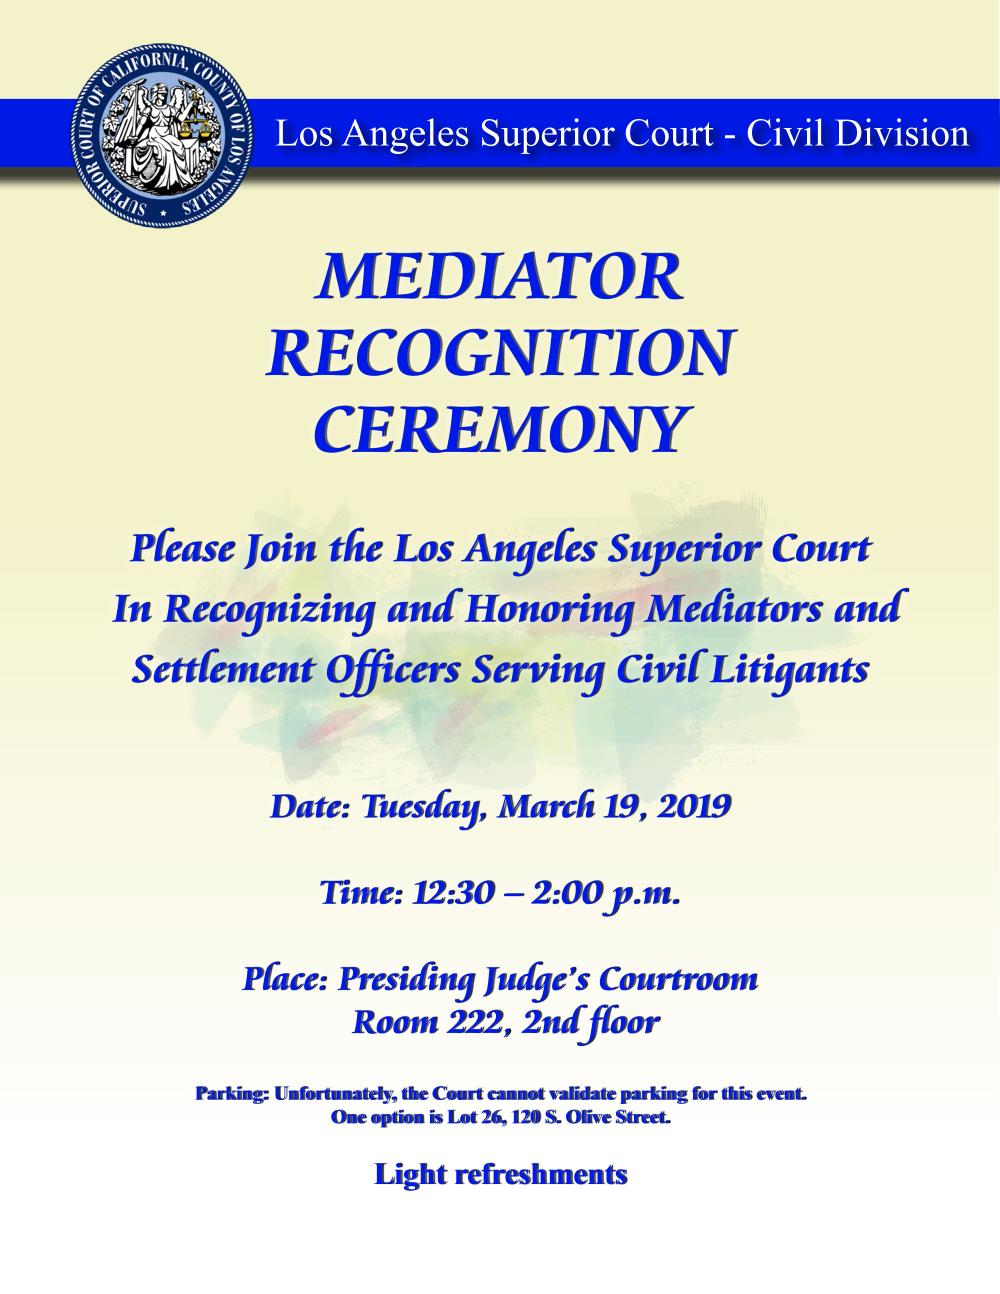 LASC Mediation Appreciation Ceremony